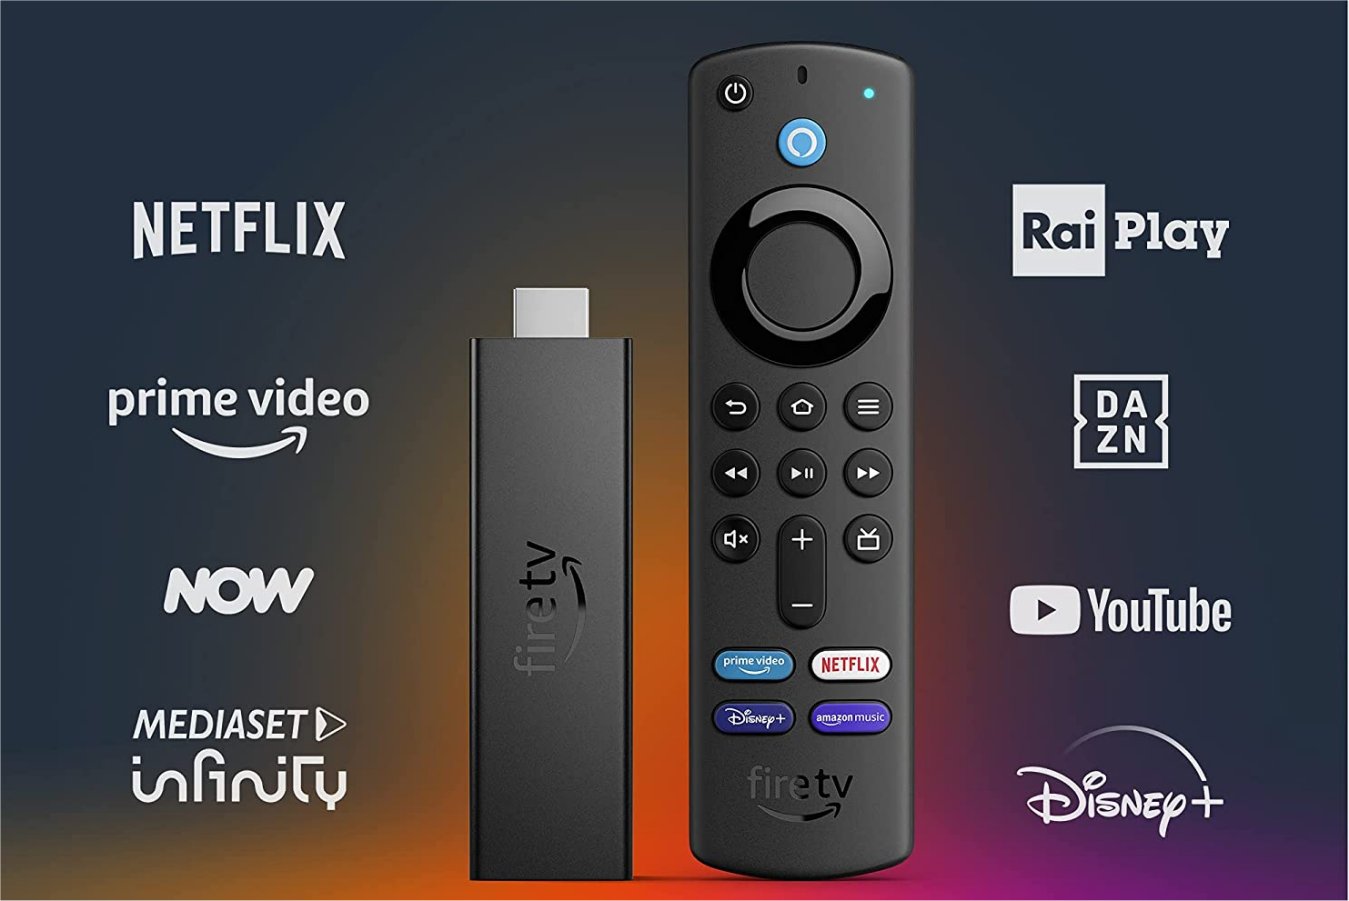 Amazon presenta Fire TV Stick 4K Max, consegne dal 7 Ottobre